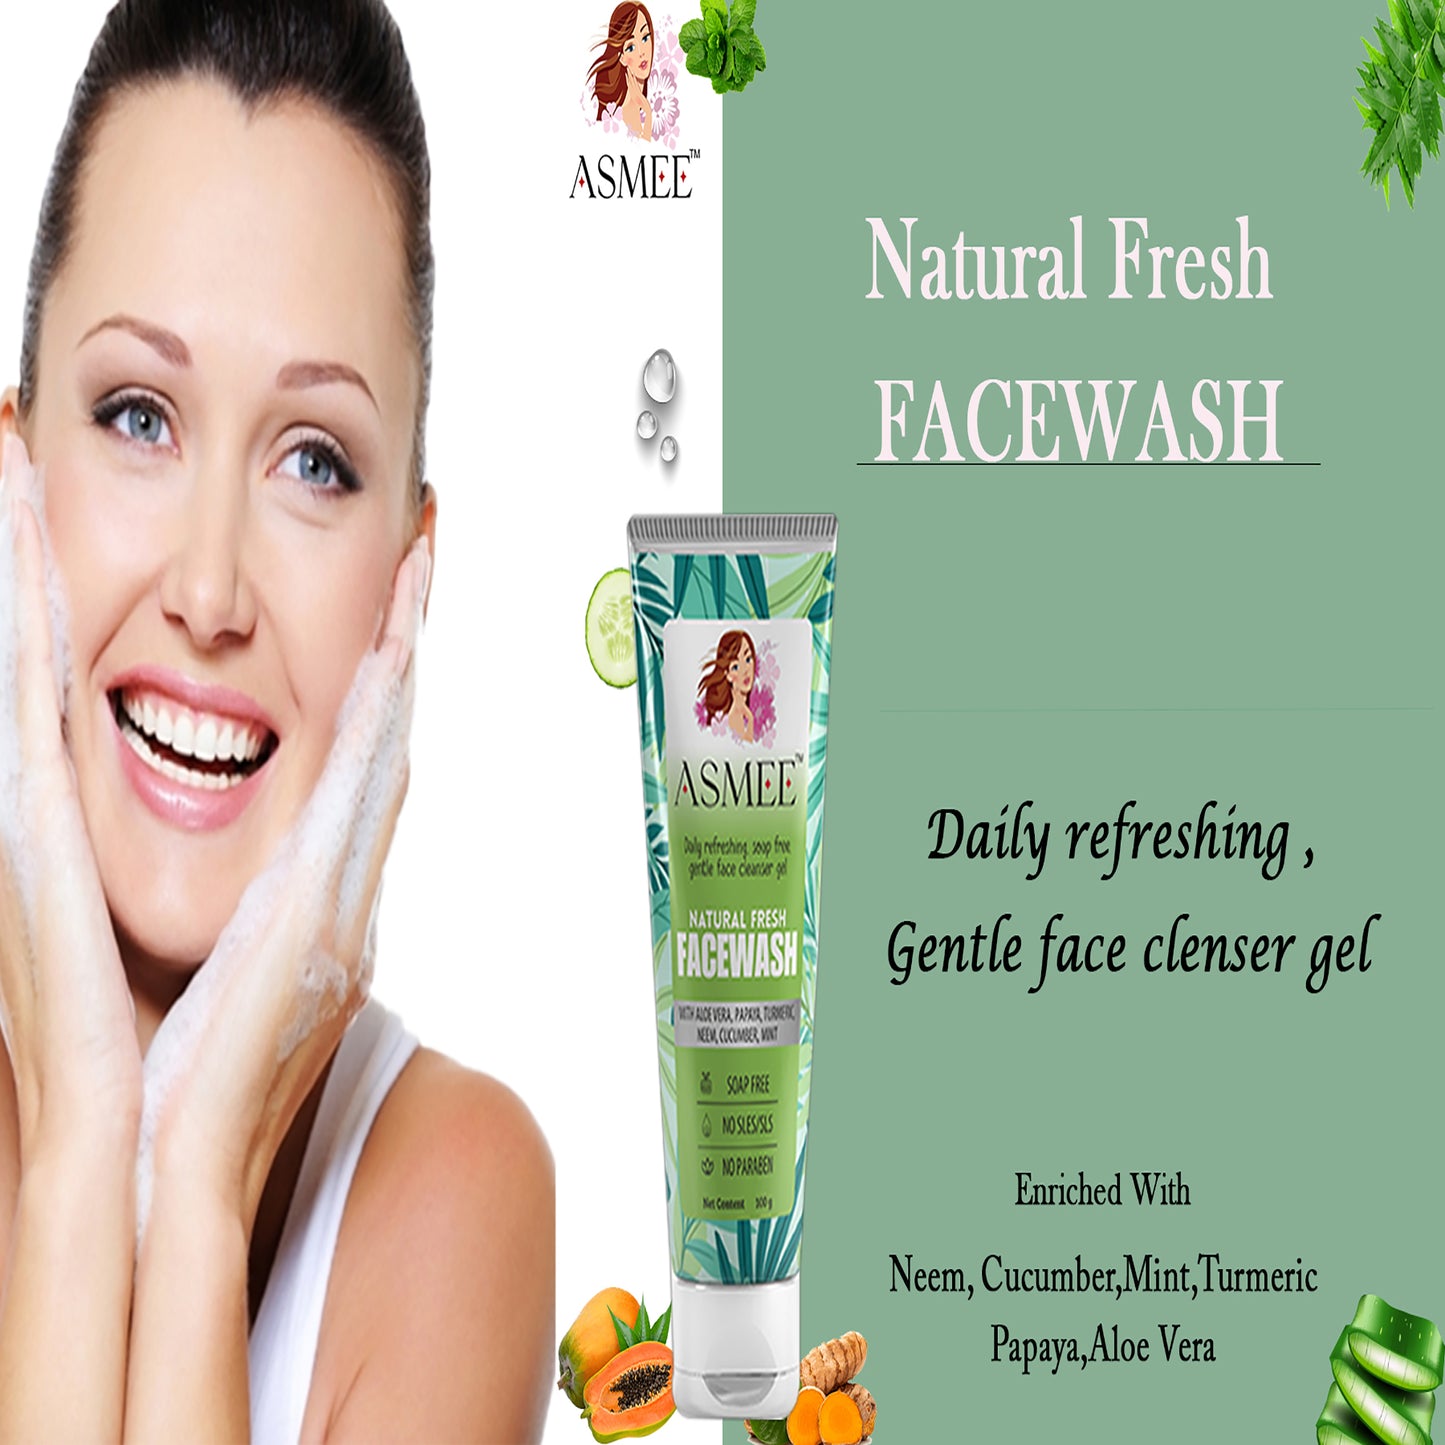 Asmee Natural Fresh Facewash